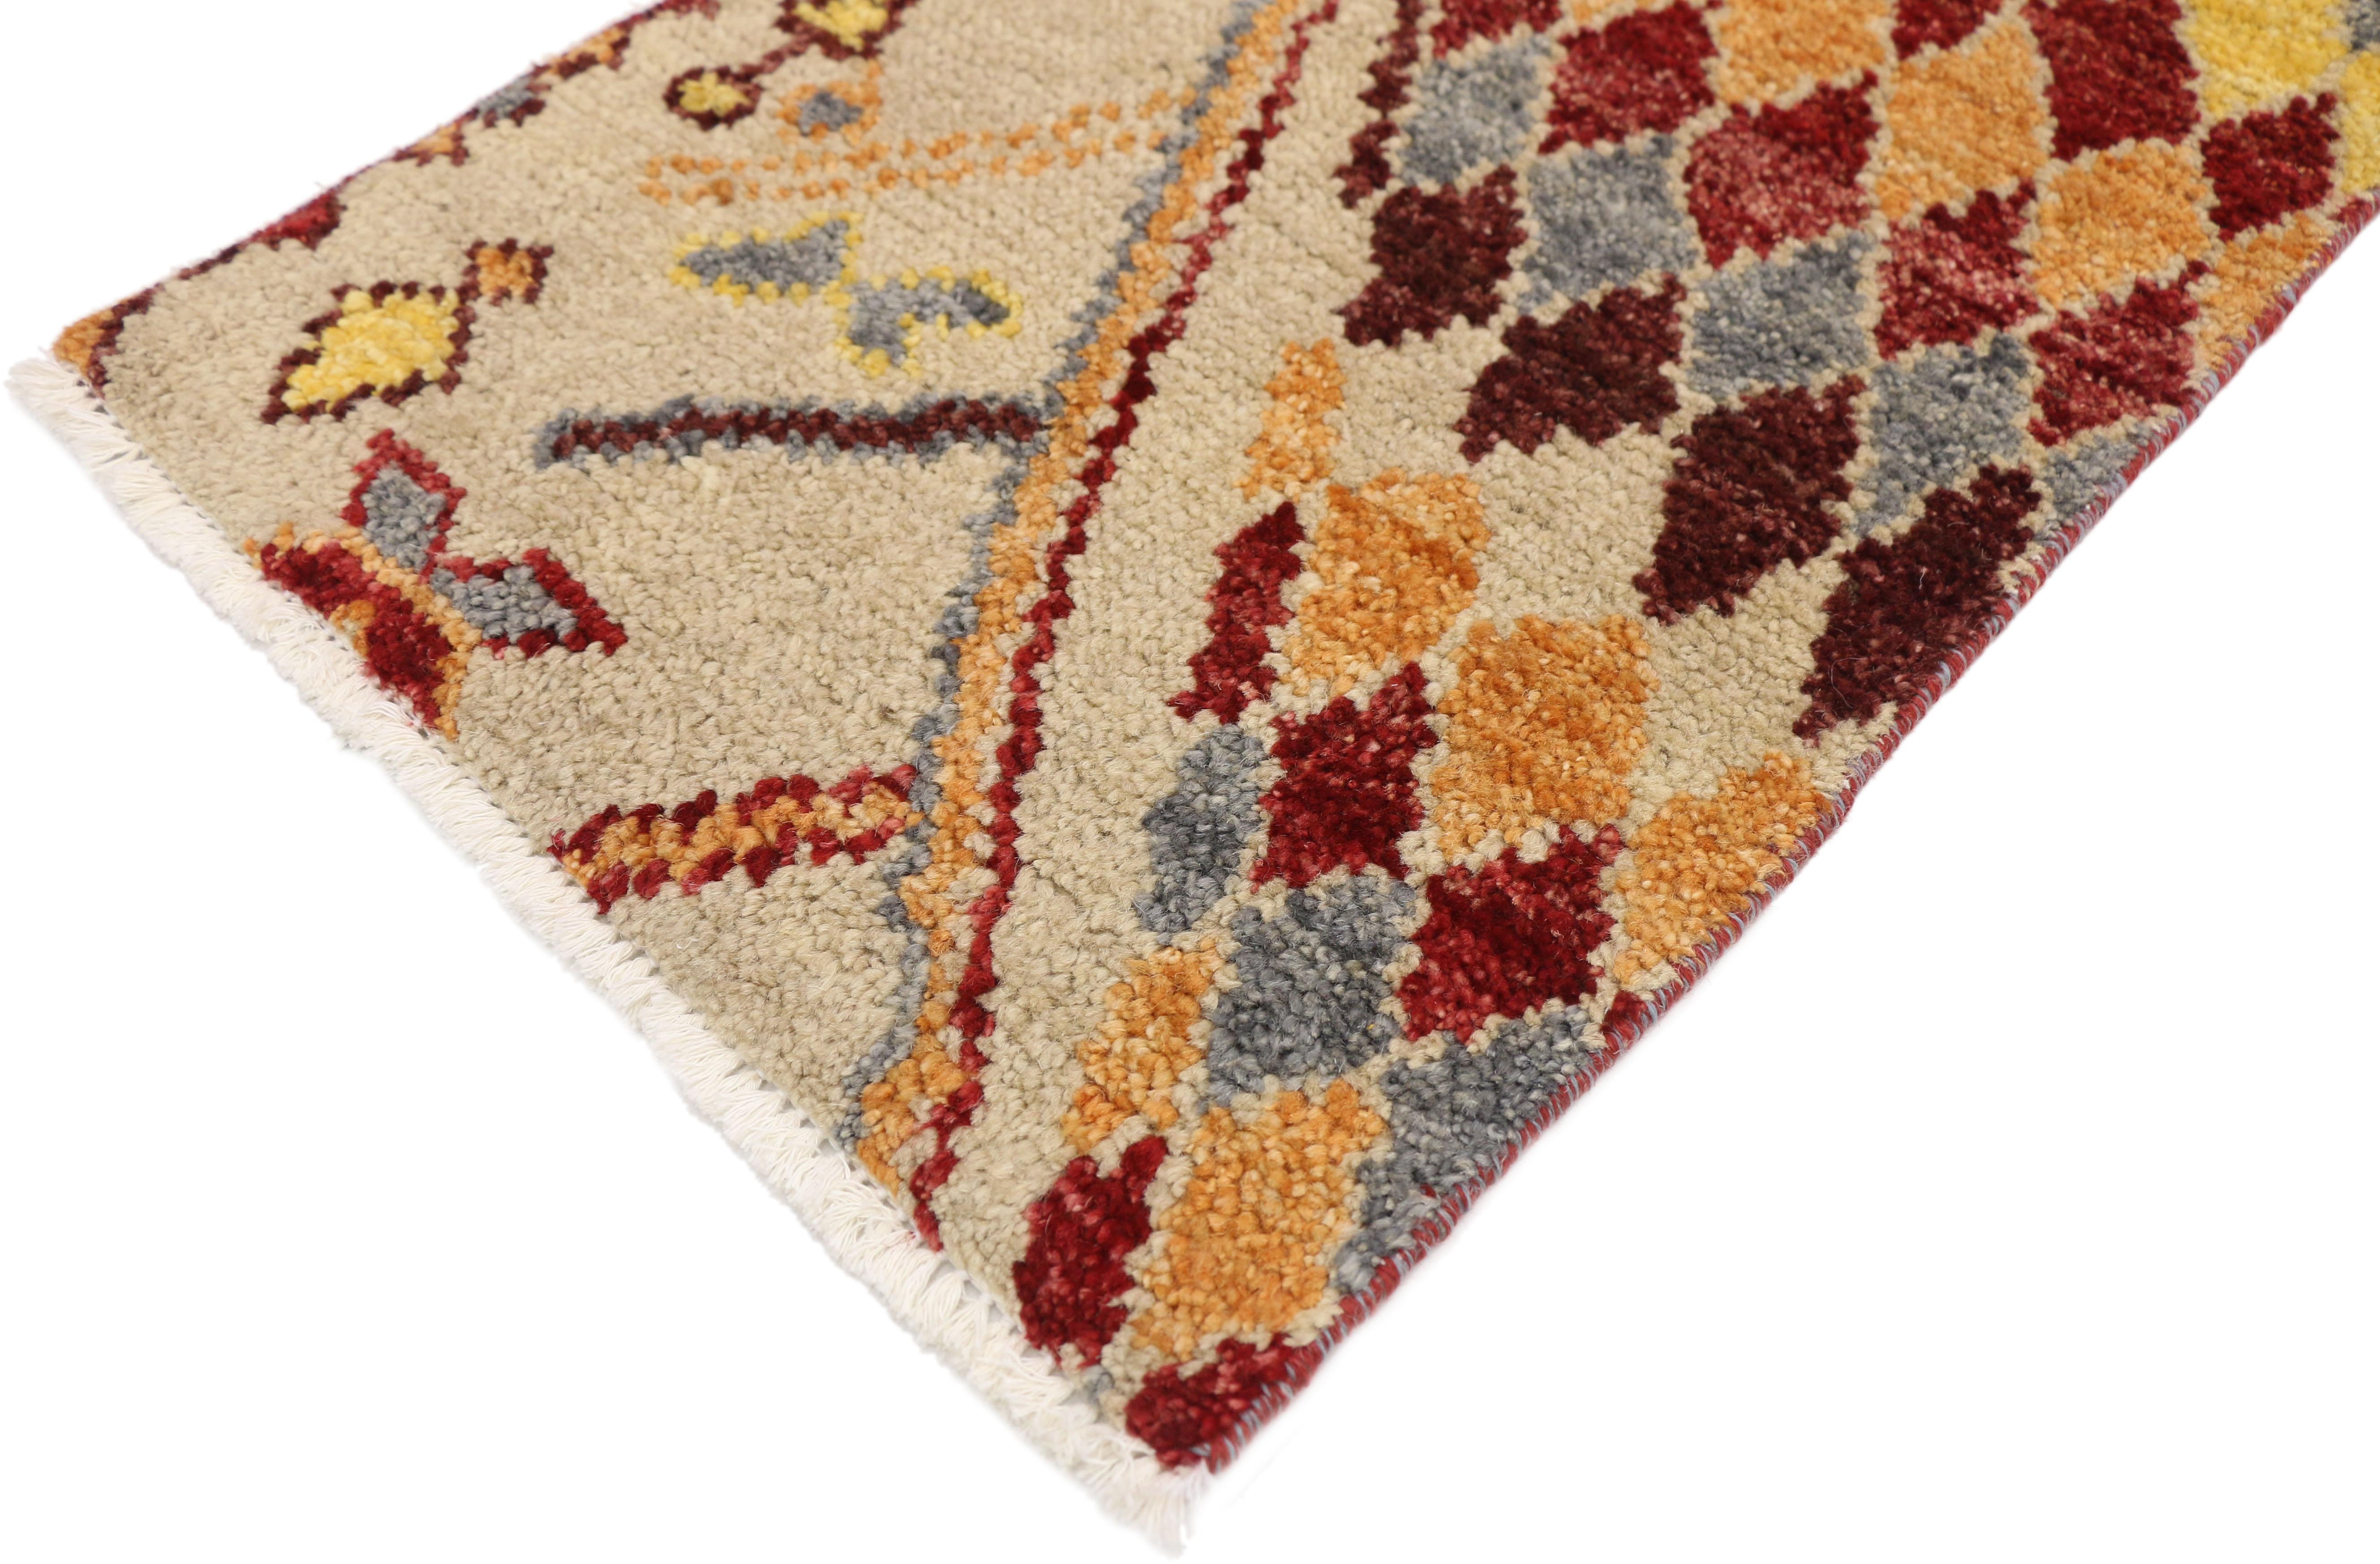 80456 New Contemporary Marokkanischer Wagireh-Teppich, 01'06 x 02'01. 
Zeitgenössische marokkanische Wagireh-Teppiche aus Pakistan stellen eine moderne Interpretation der traditionellen Technik dar, bei der komplizierte kleine Muster zu größeren